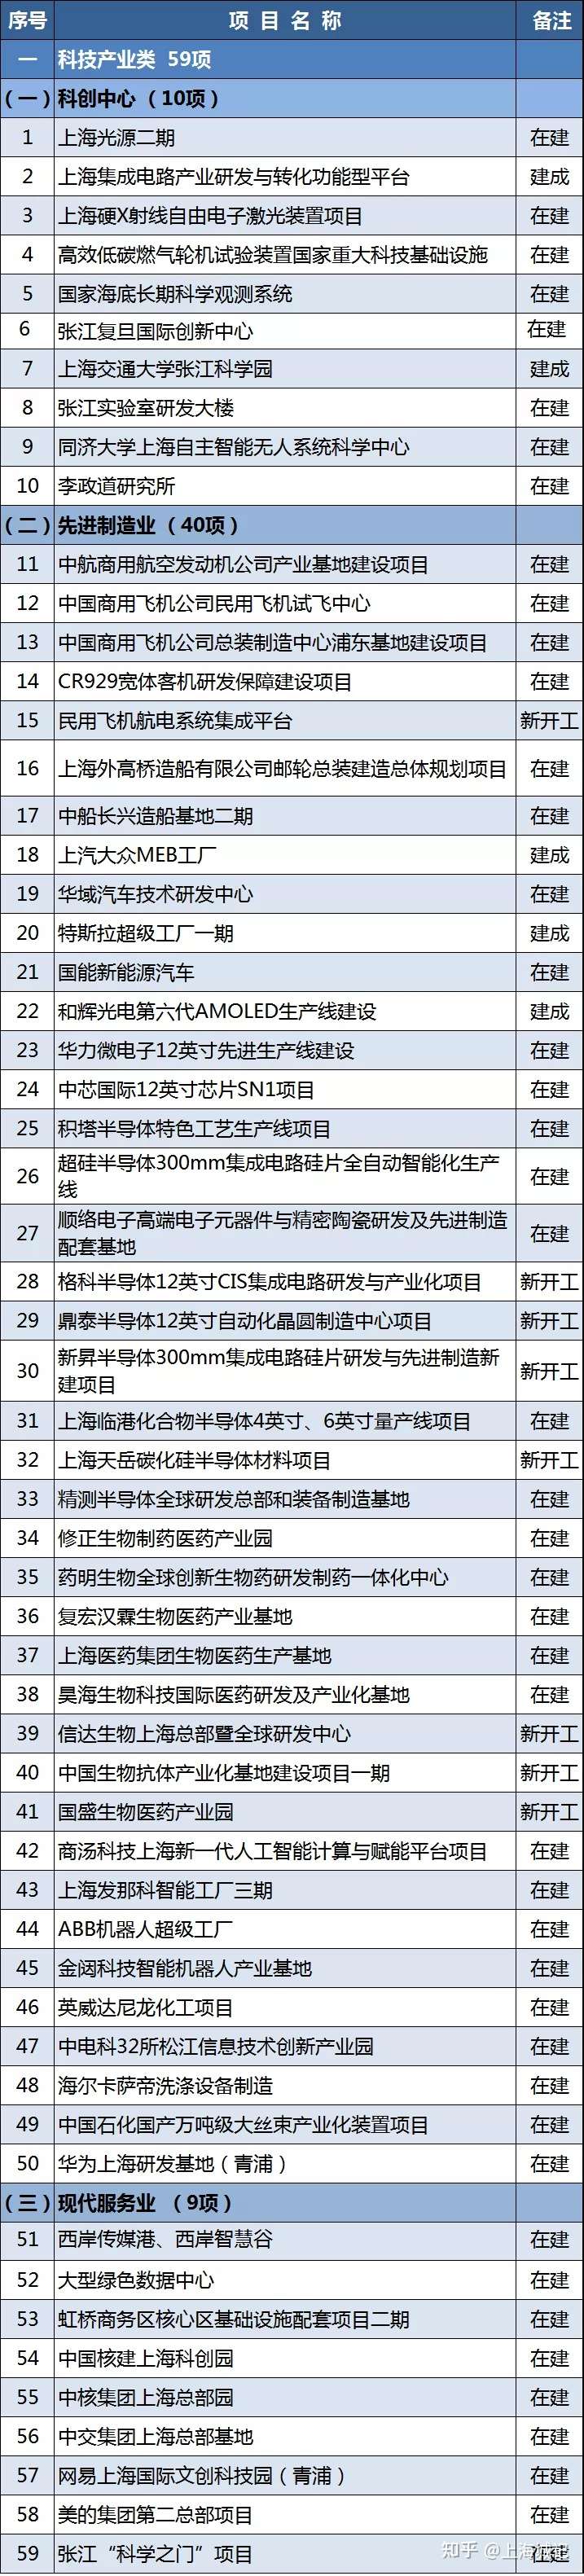 2021年上海重大建設項目清單公布(圖1)